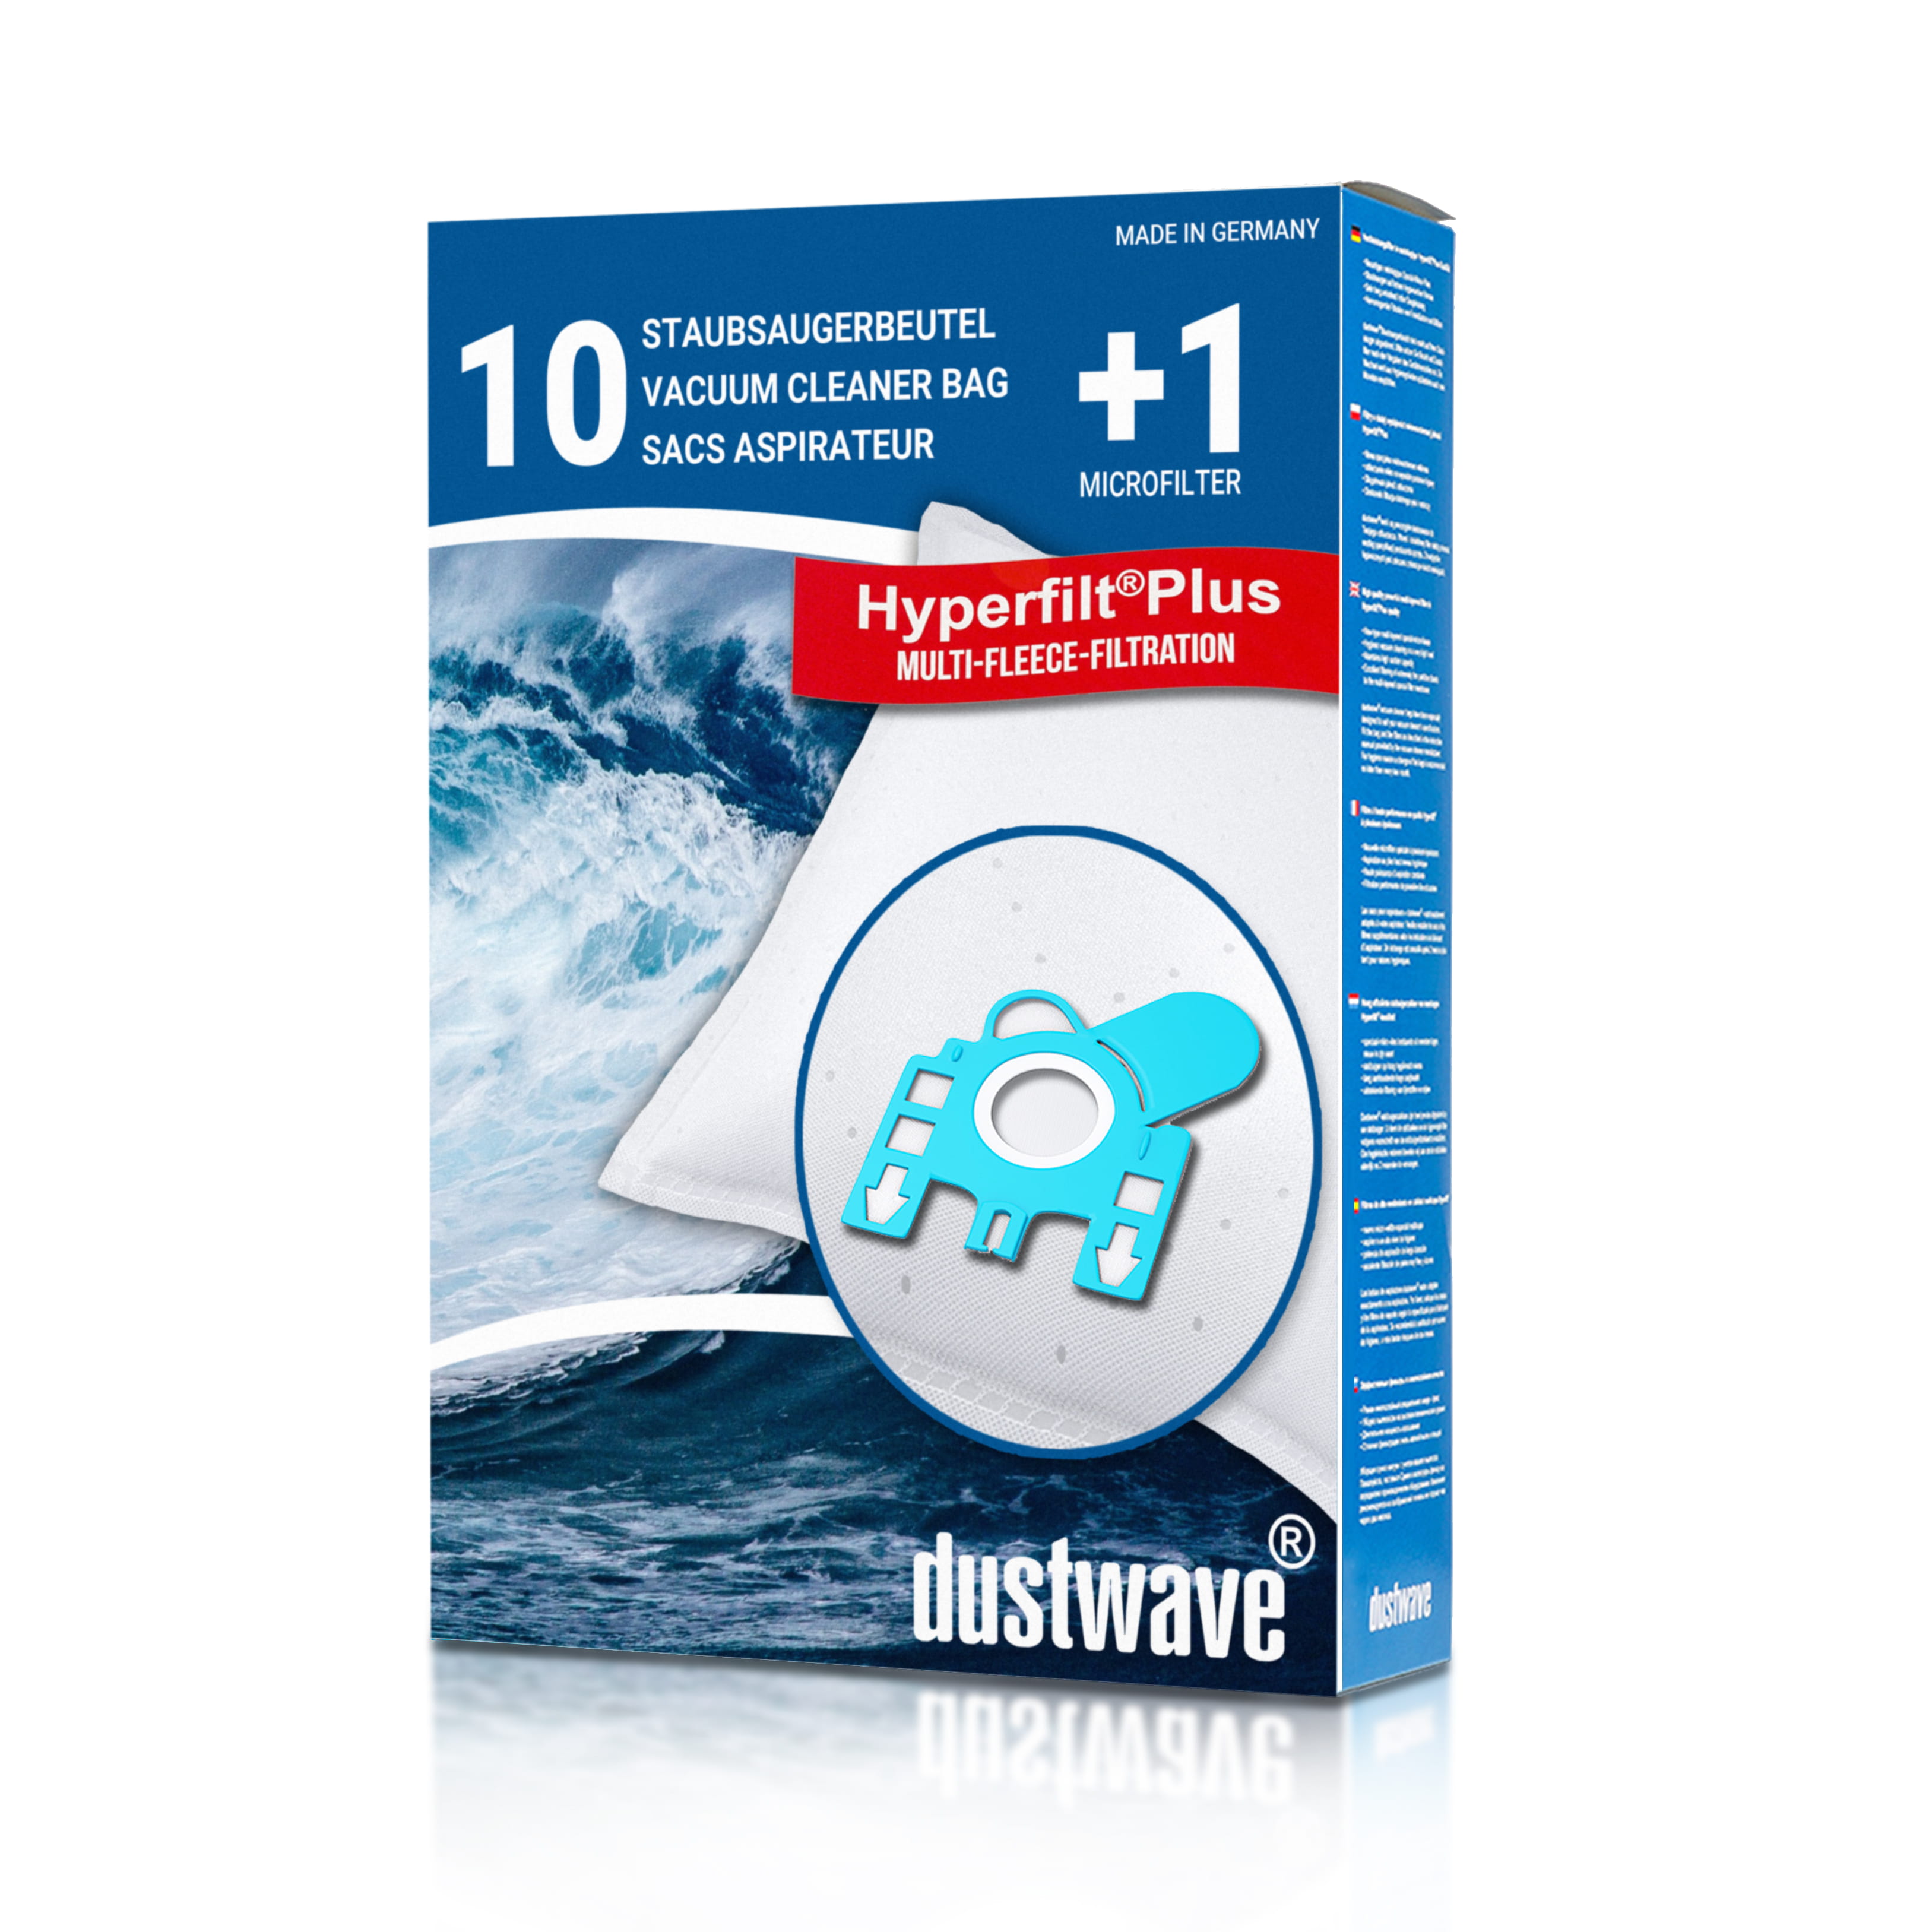 Dustwave® 10 Staubsaugerbeutel für Hoover TS2161 / TRTS2161 - hocheffizient, mehrlagiges Mikrovlies mit Hygieneverschluss - Made in Germany